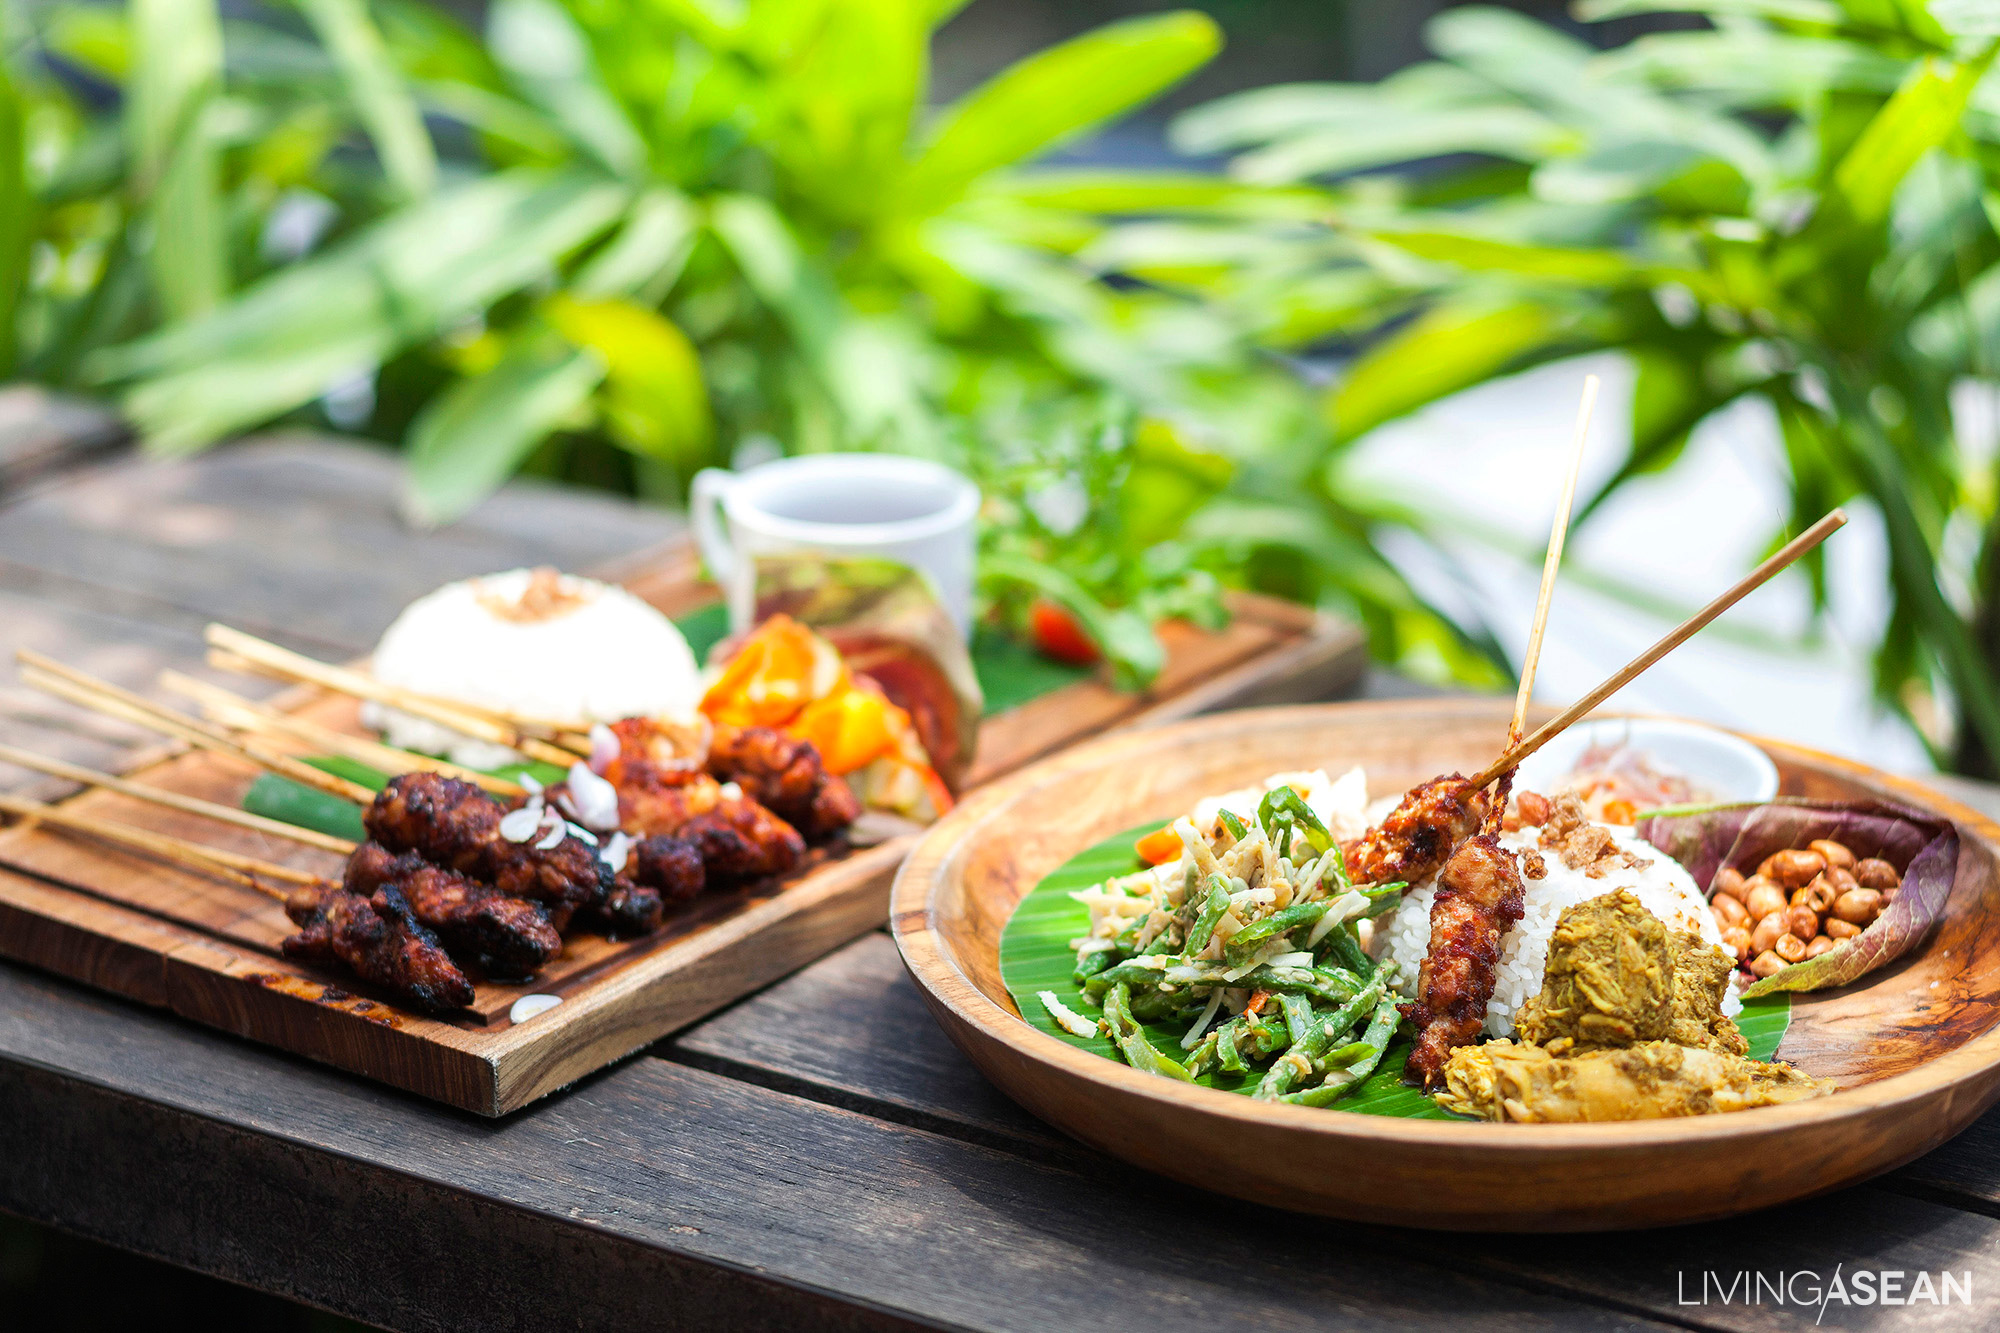 10 Best Places to Eat in Canggu, Bali - LIVING ASEAN - Inspiring